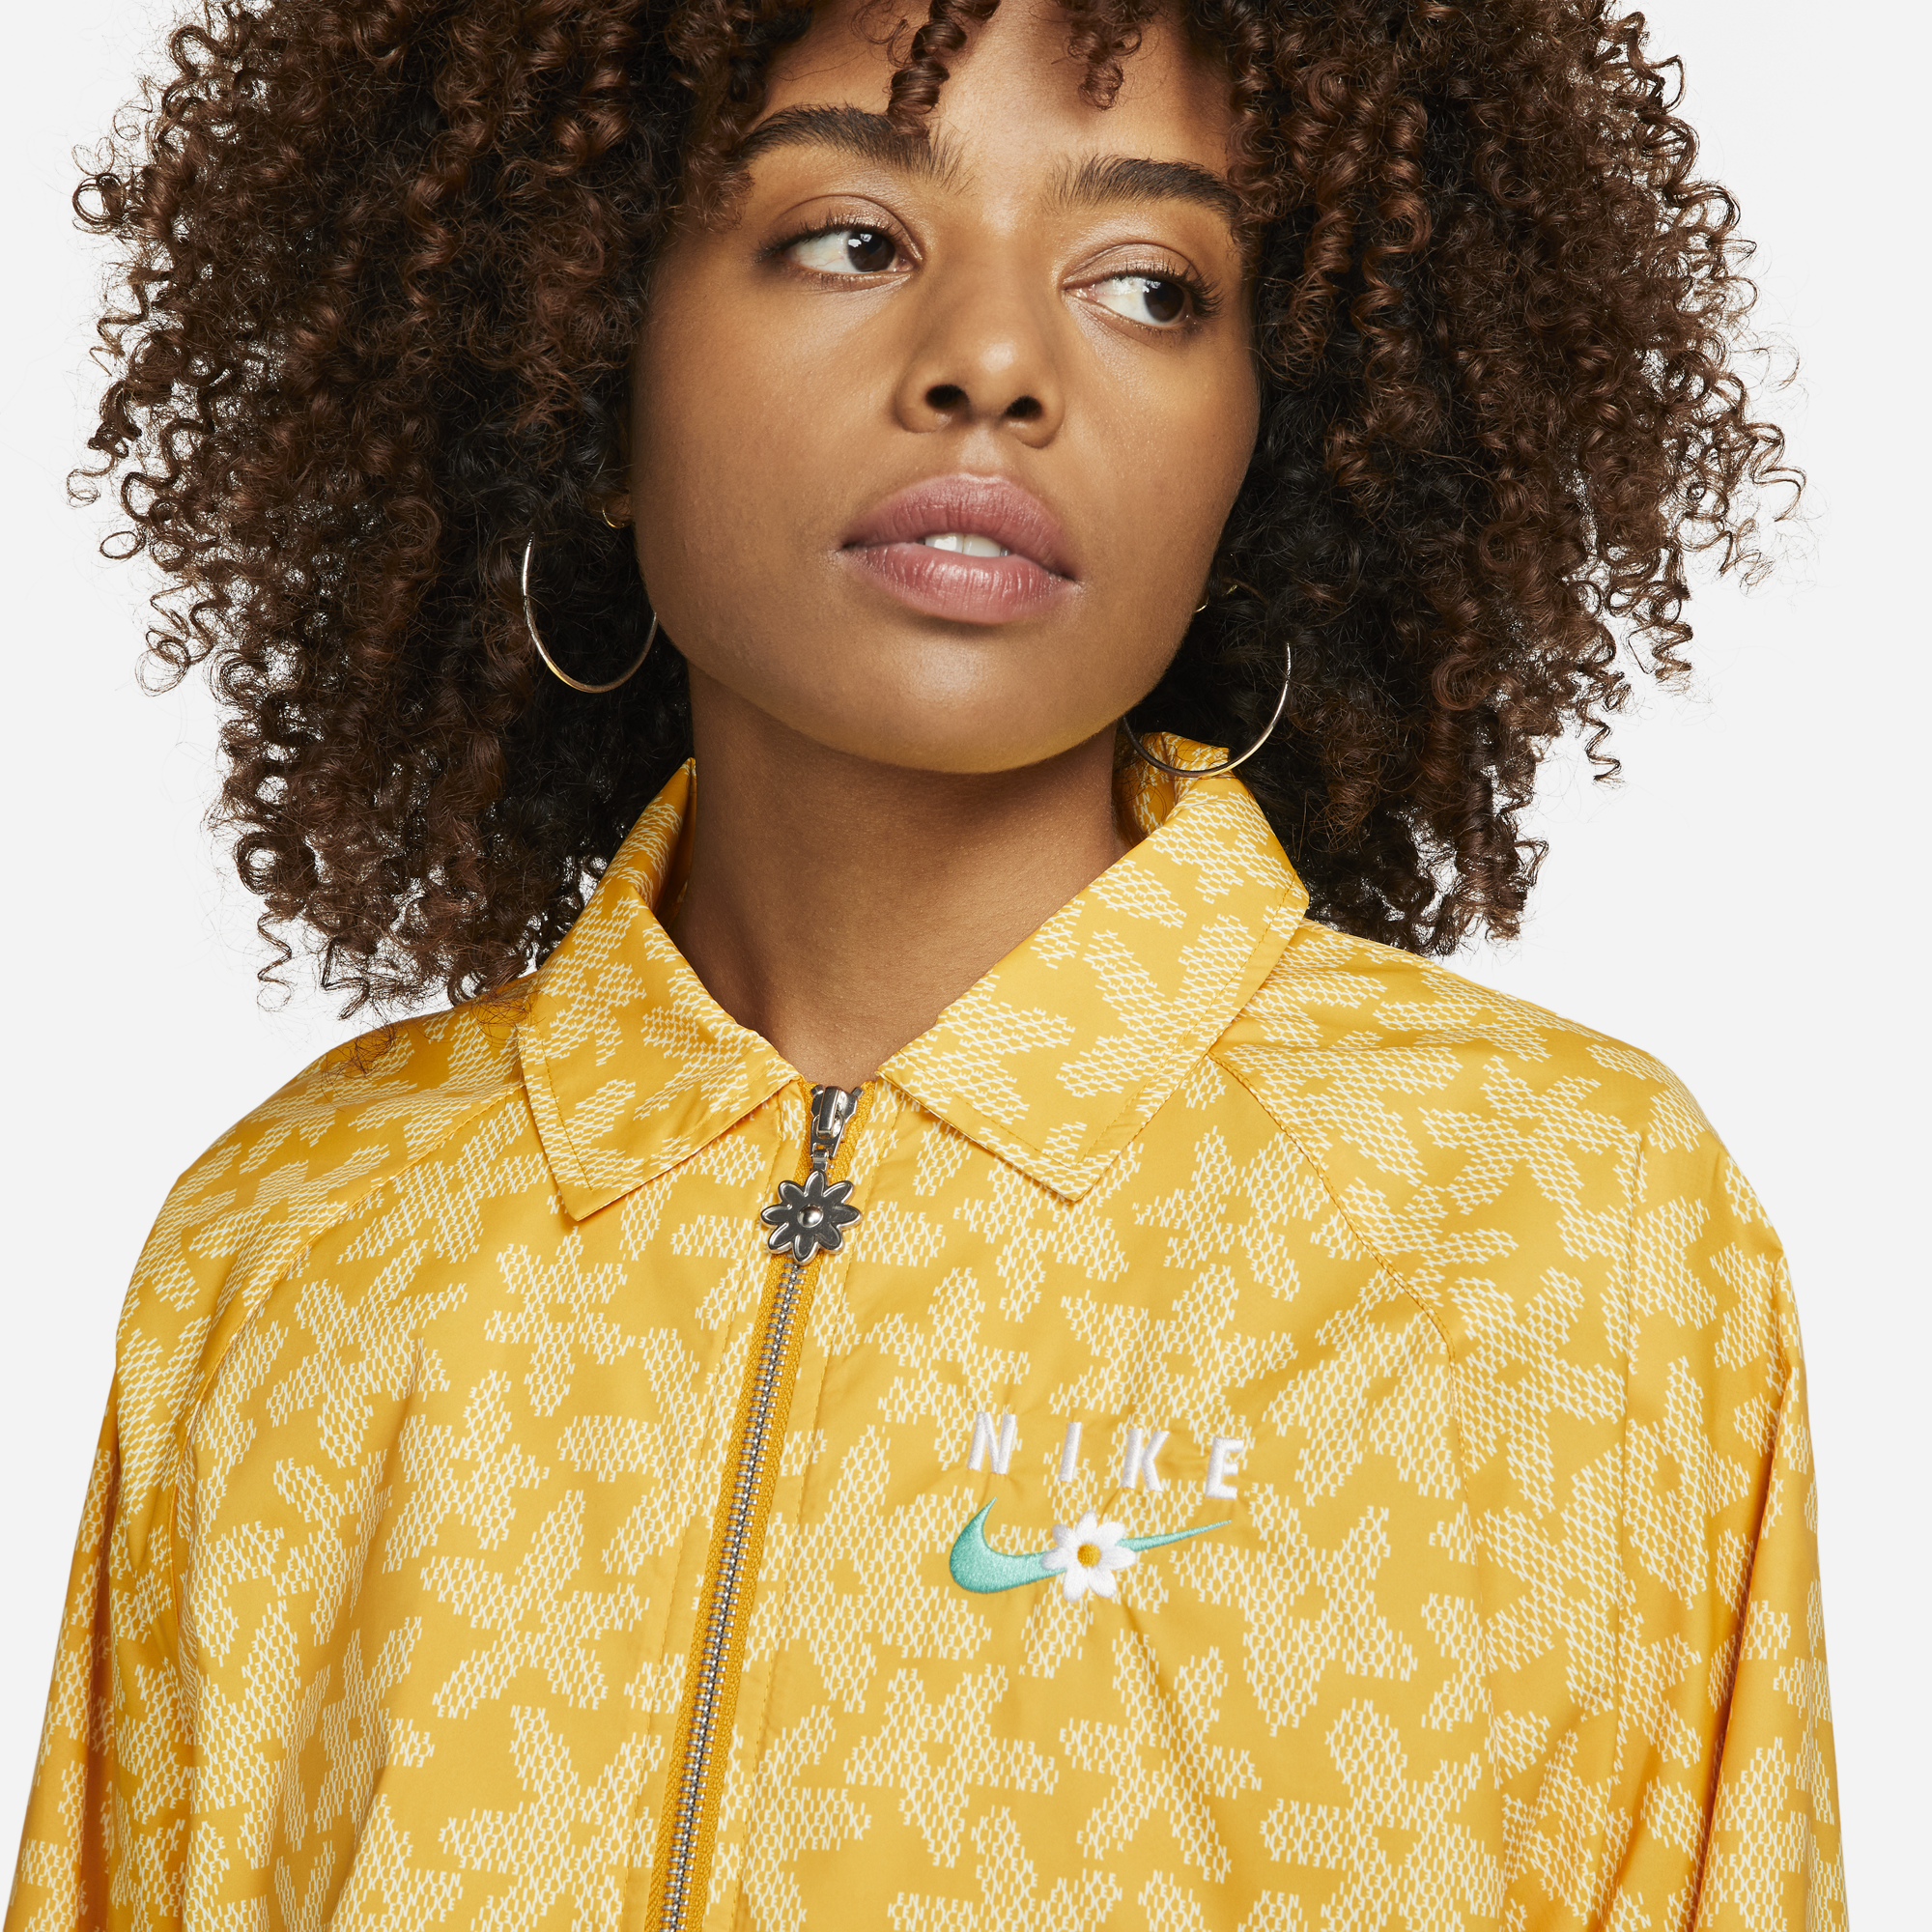 Womens Nike Sportswear Jacket 'Yellow'